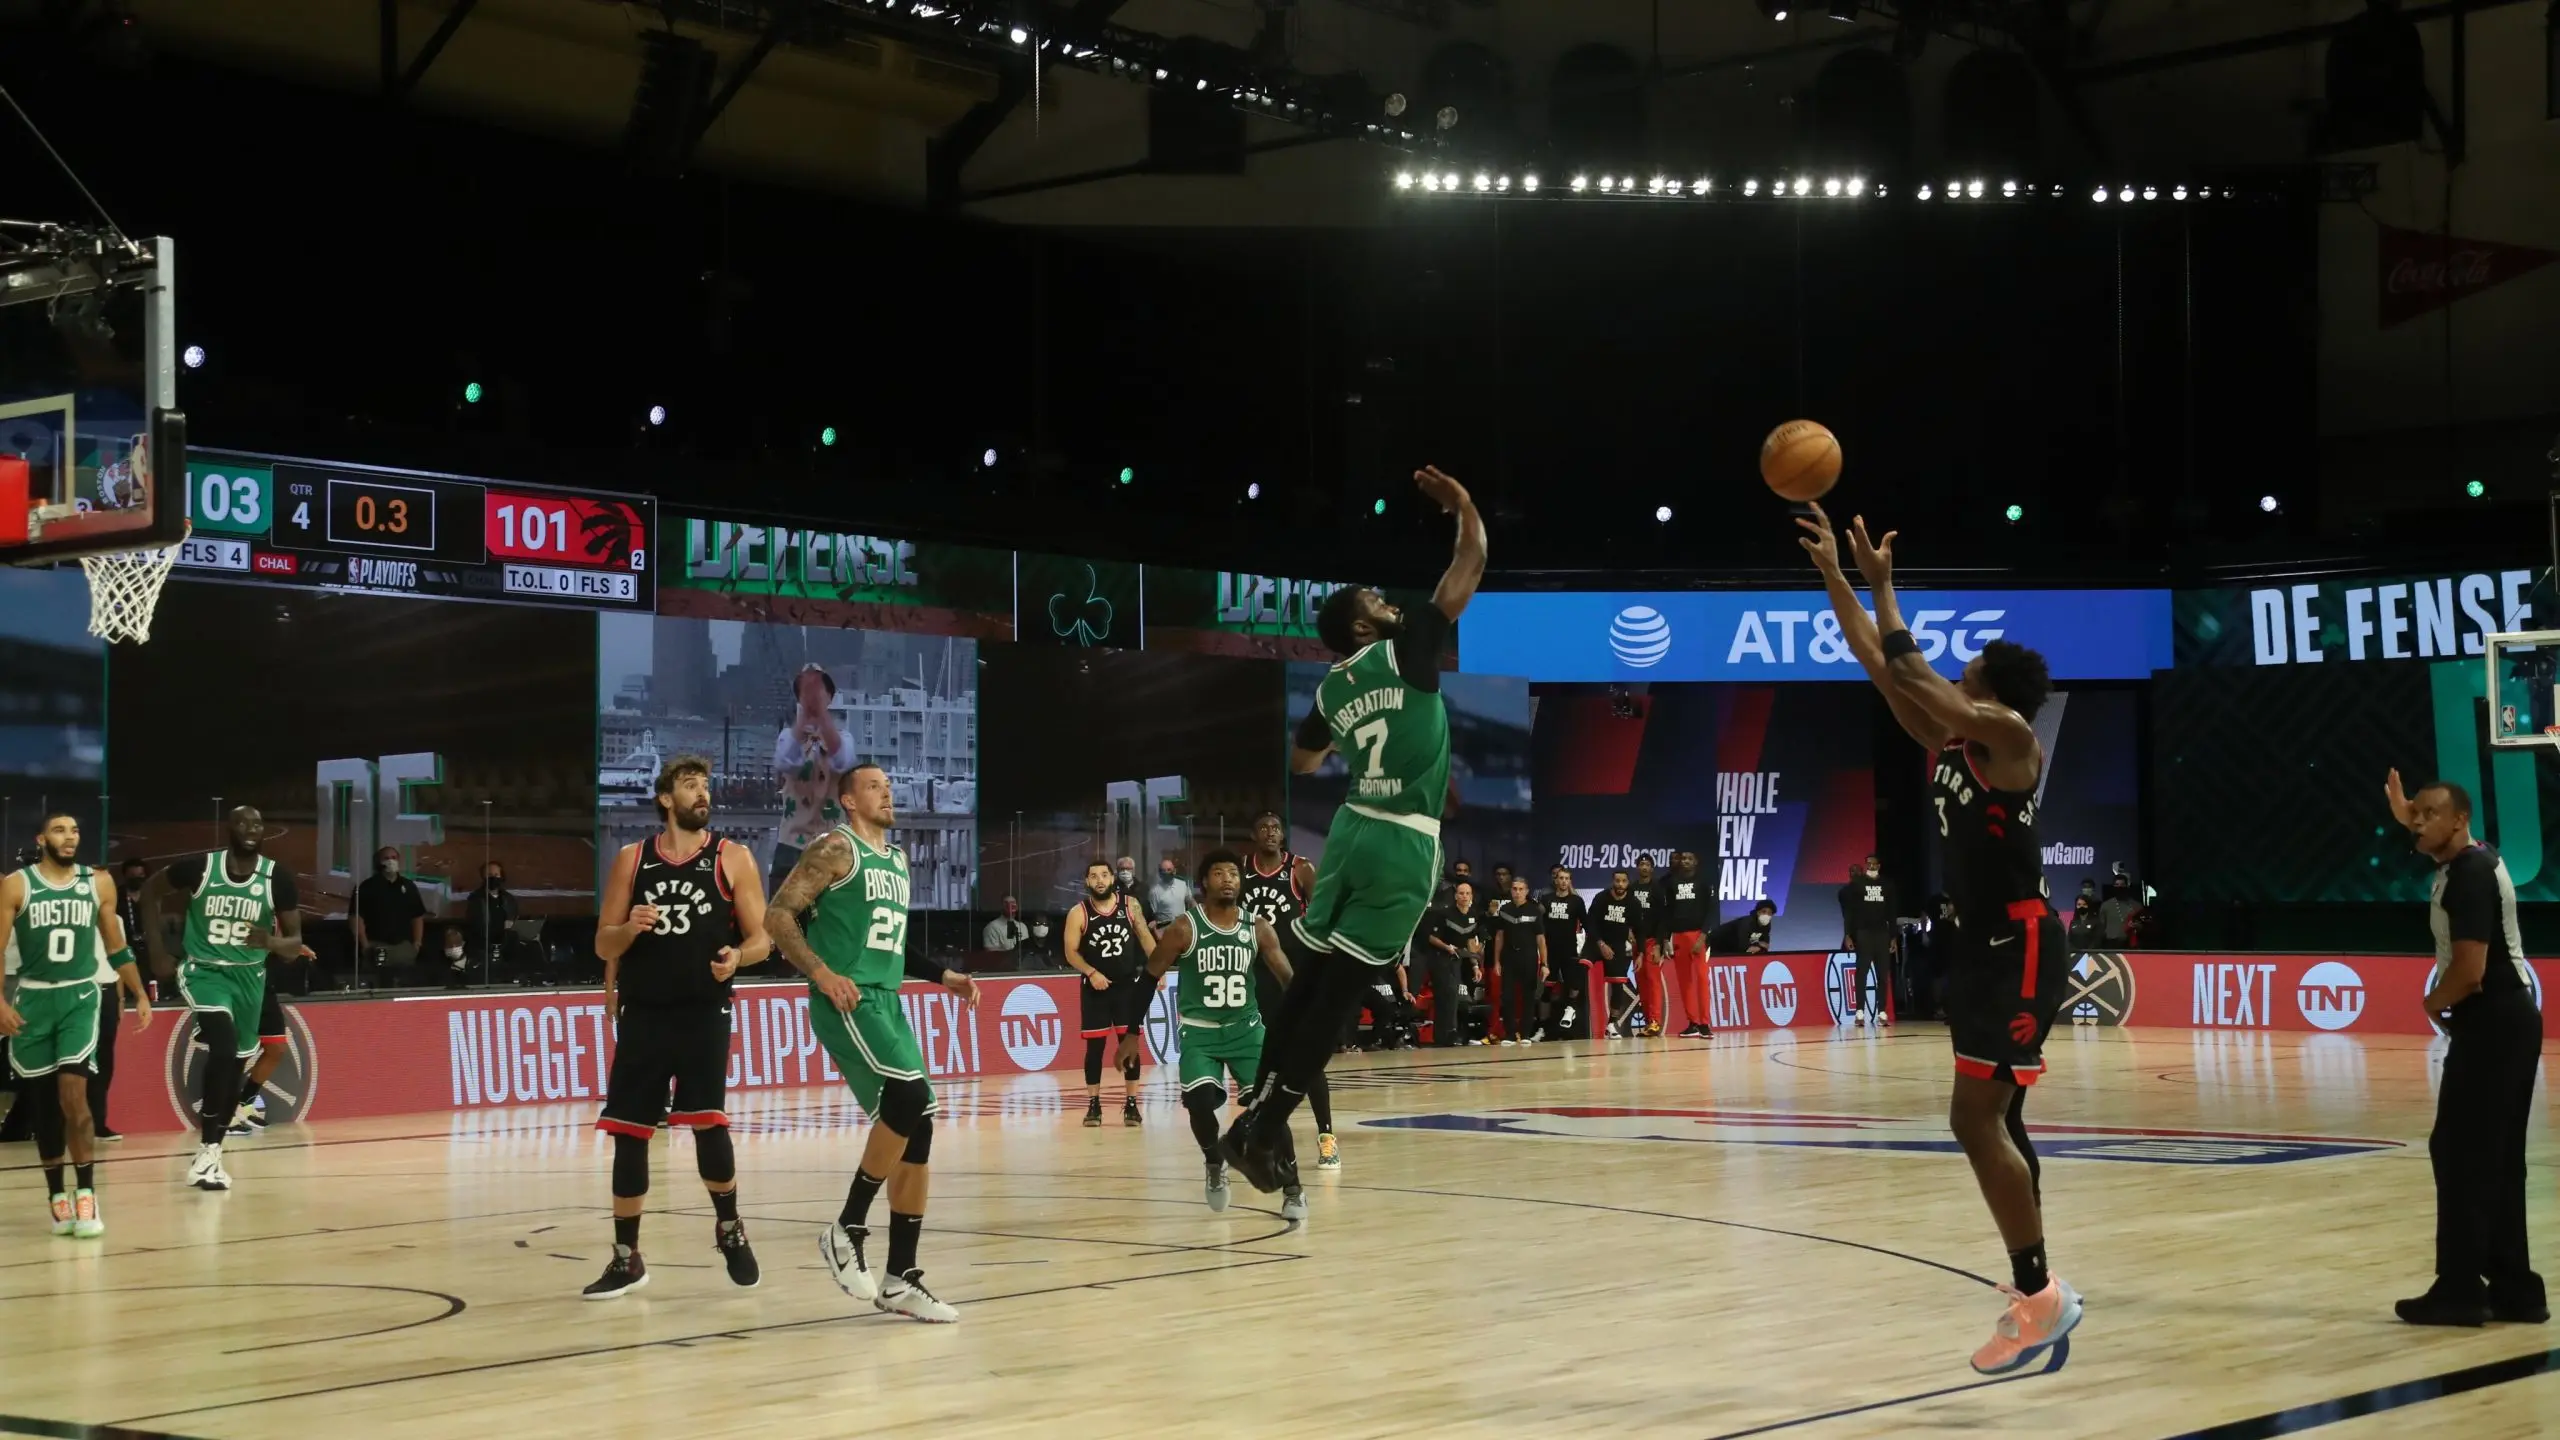 Com arremesso decisivo de Anunoby, Raptors vencem Celtics e diminuem série